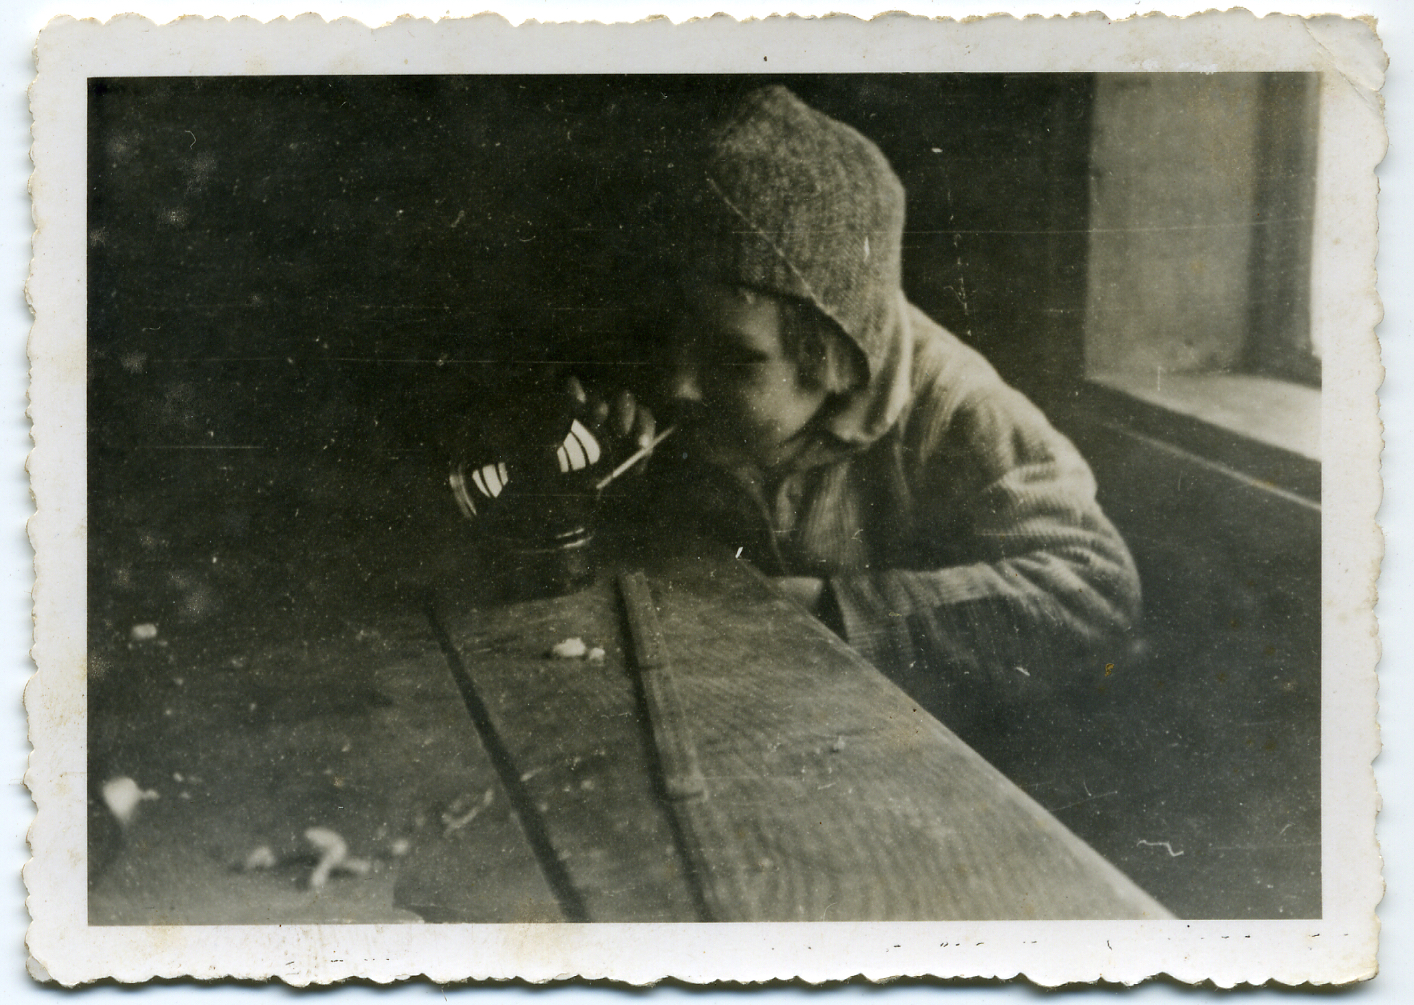 Stara wyblakła fotografia przedstawia chłopczyka, który przegląda się w szklanej kuli, ustawionej na stole. W ustach ma cienką rurkę, którą trzyma palcami, jakby palił papierosa.